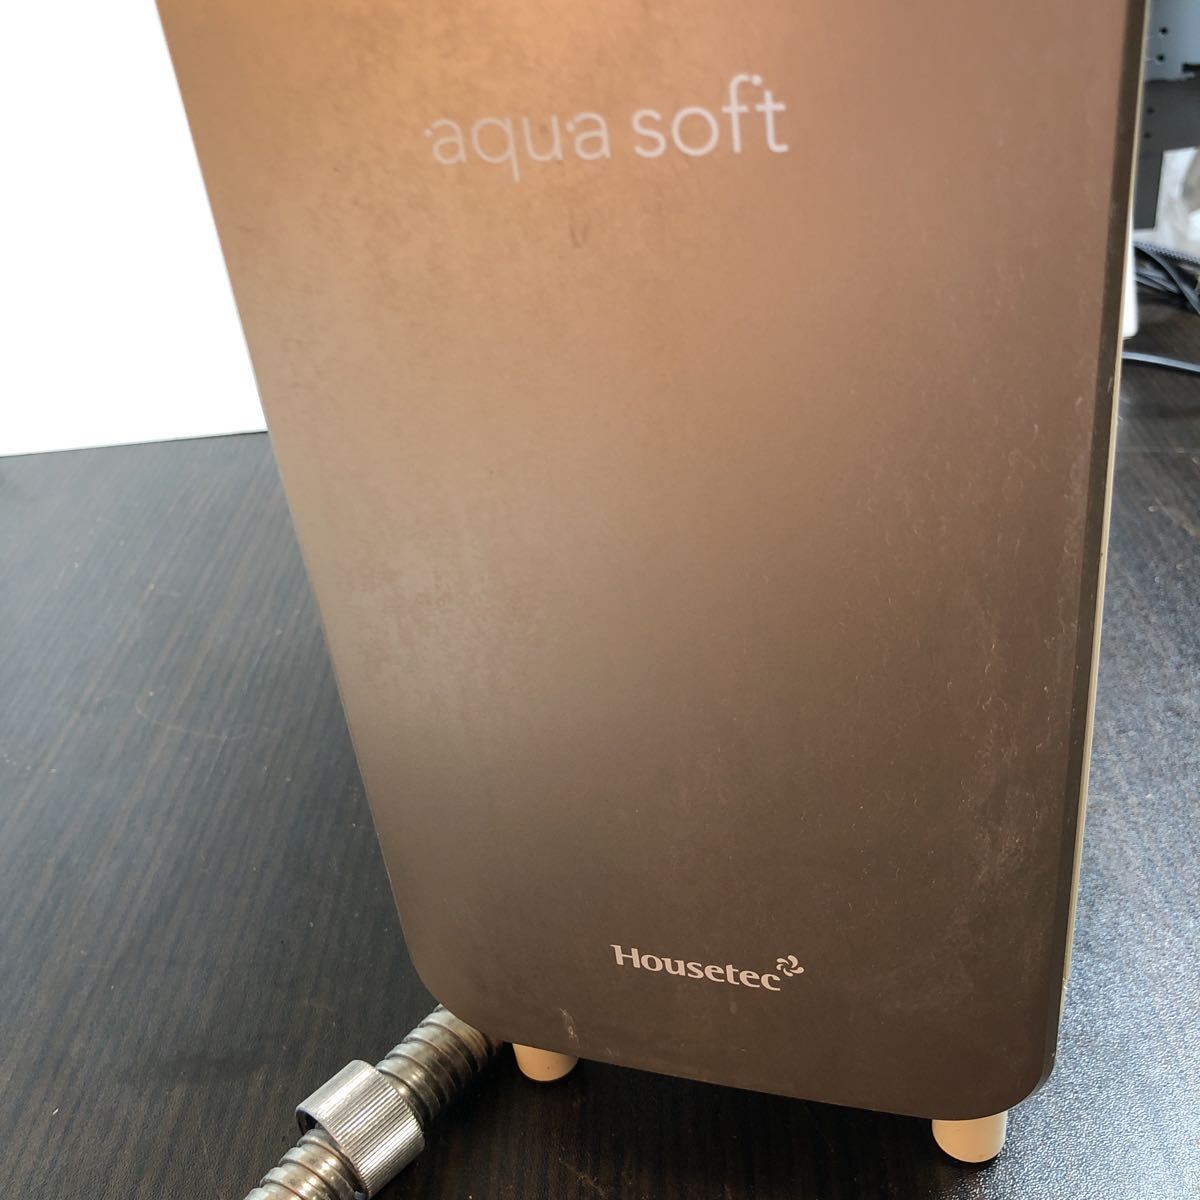 ハウステック aqua soft アクアソフト シャワー用軟水器 AQ-S401